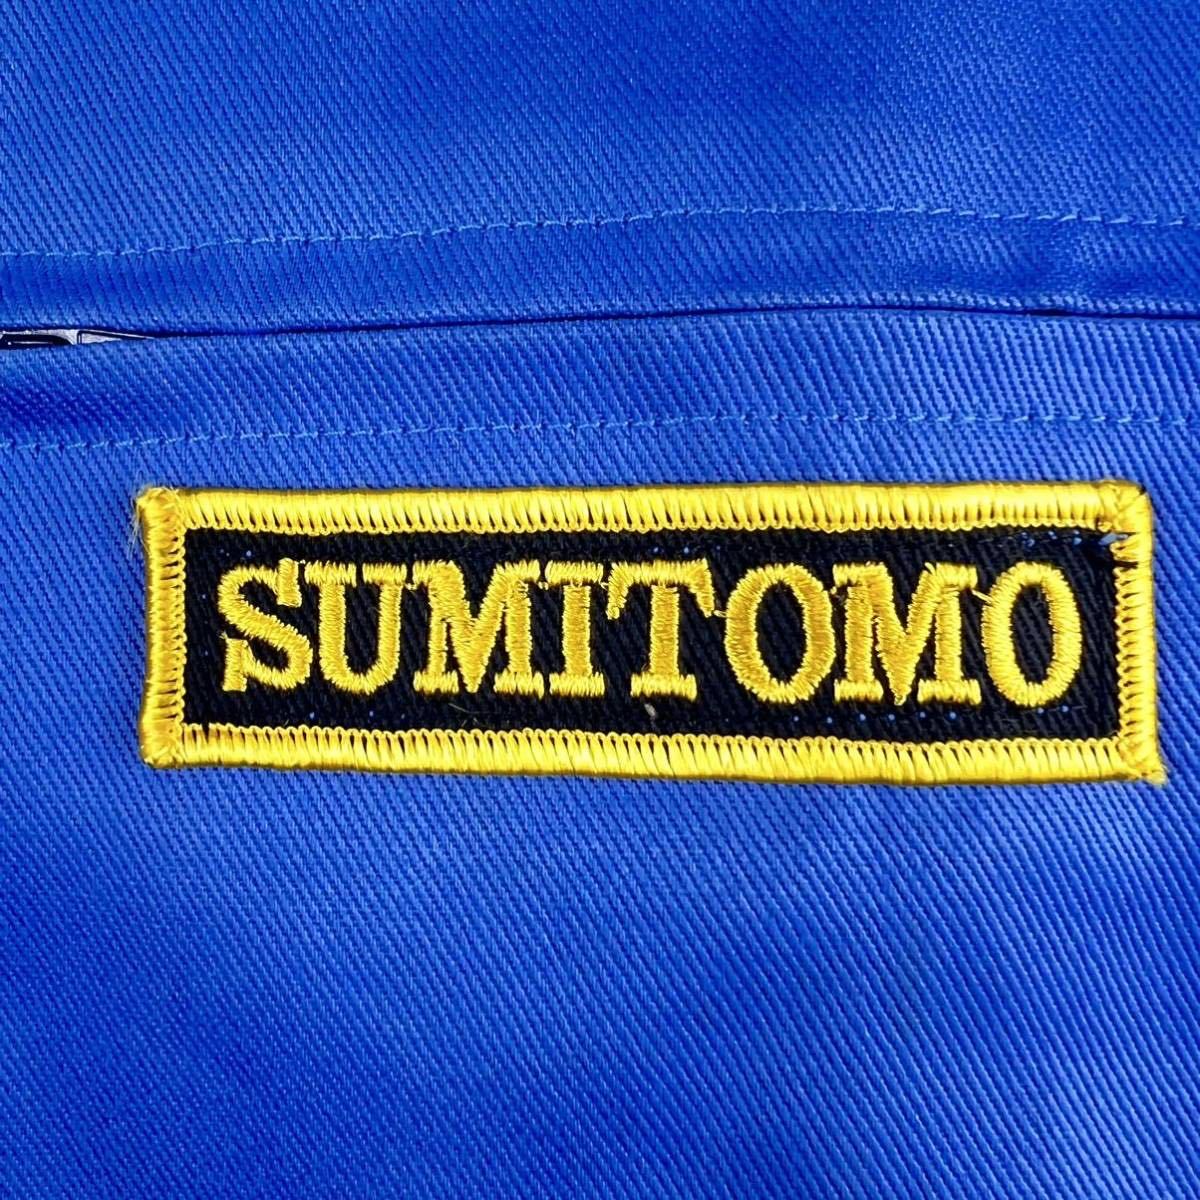  Vintage [SUMITOMO]SCM комбинезон сделано в Японии 3L Sumitomo строительная техника линия рабочая одежда retro Work 90s механик рабочая одежда Jump костюм все в одном 